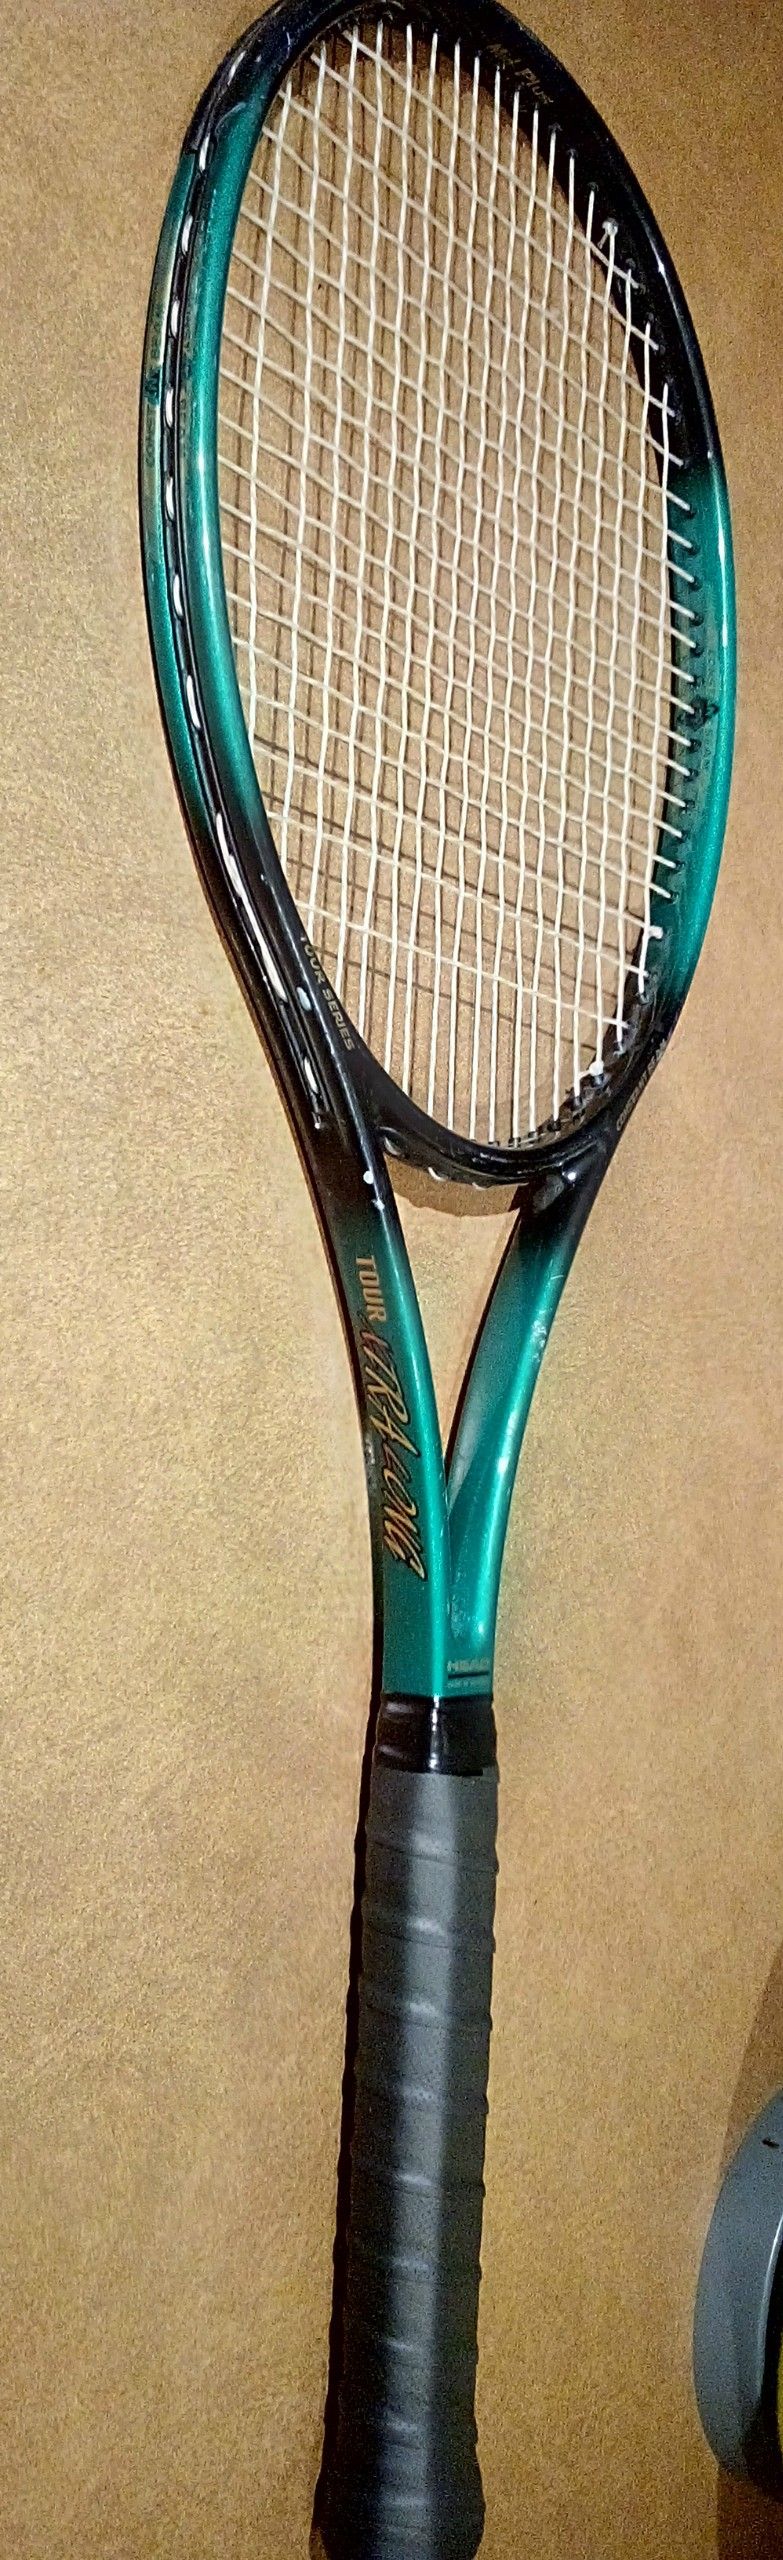 Rare tennis racquet